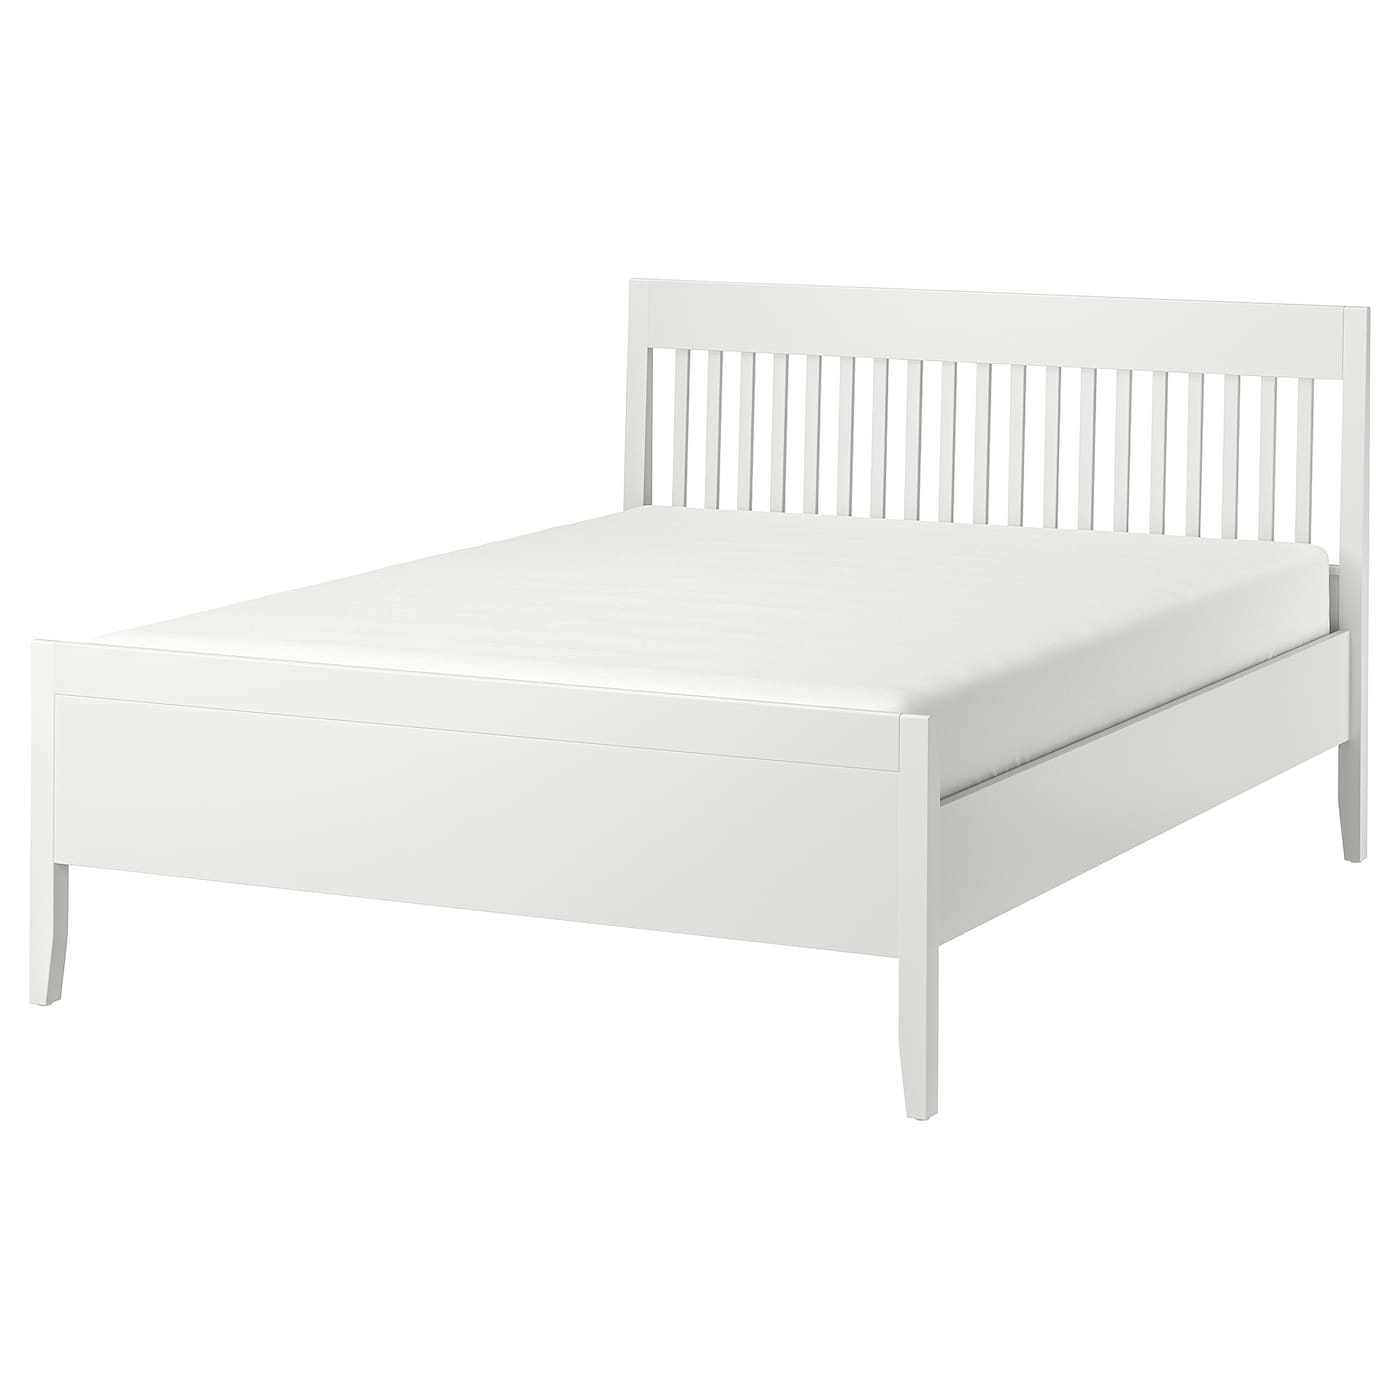 Каркас кровати - IKEA IDANÄS/IDANAS, 200х160 см, белый, ИДАНЭС ИКЕА